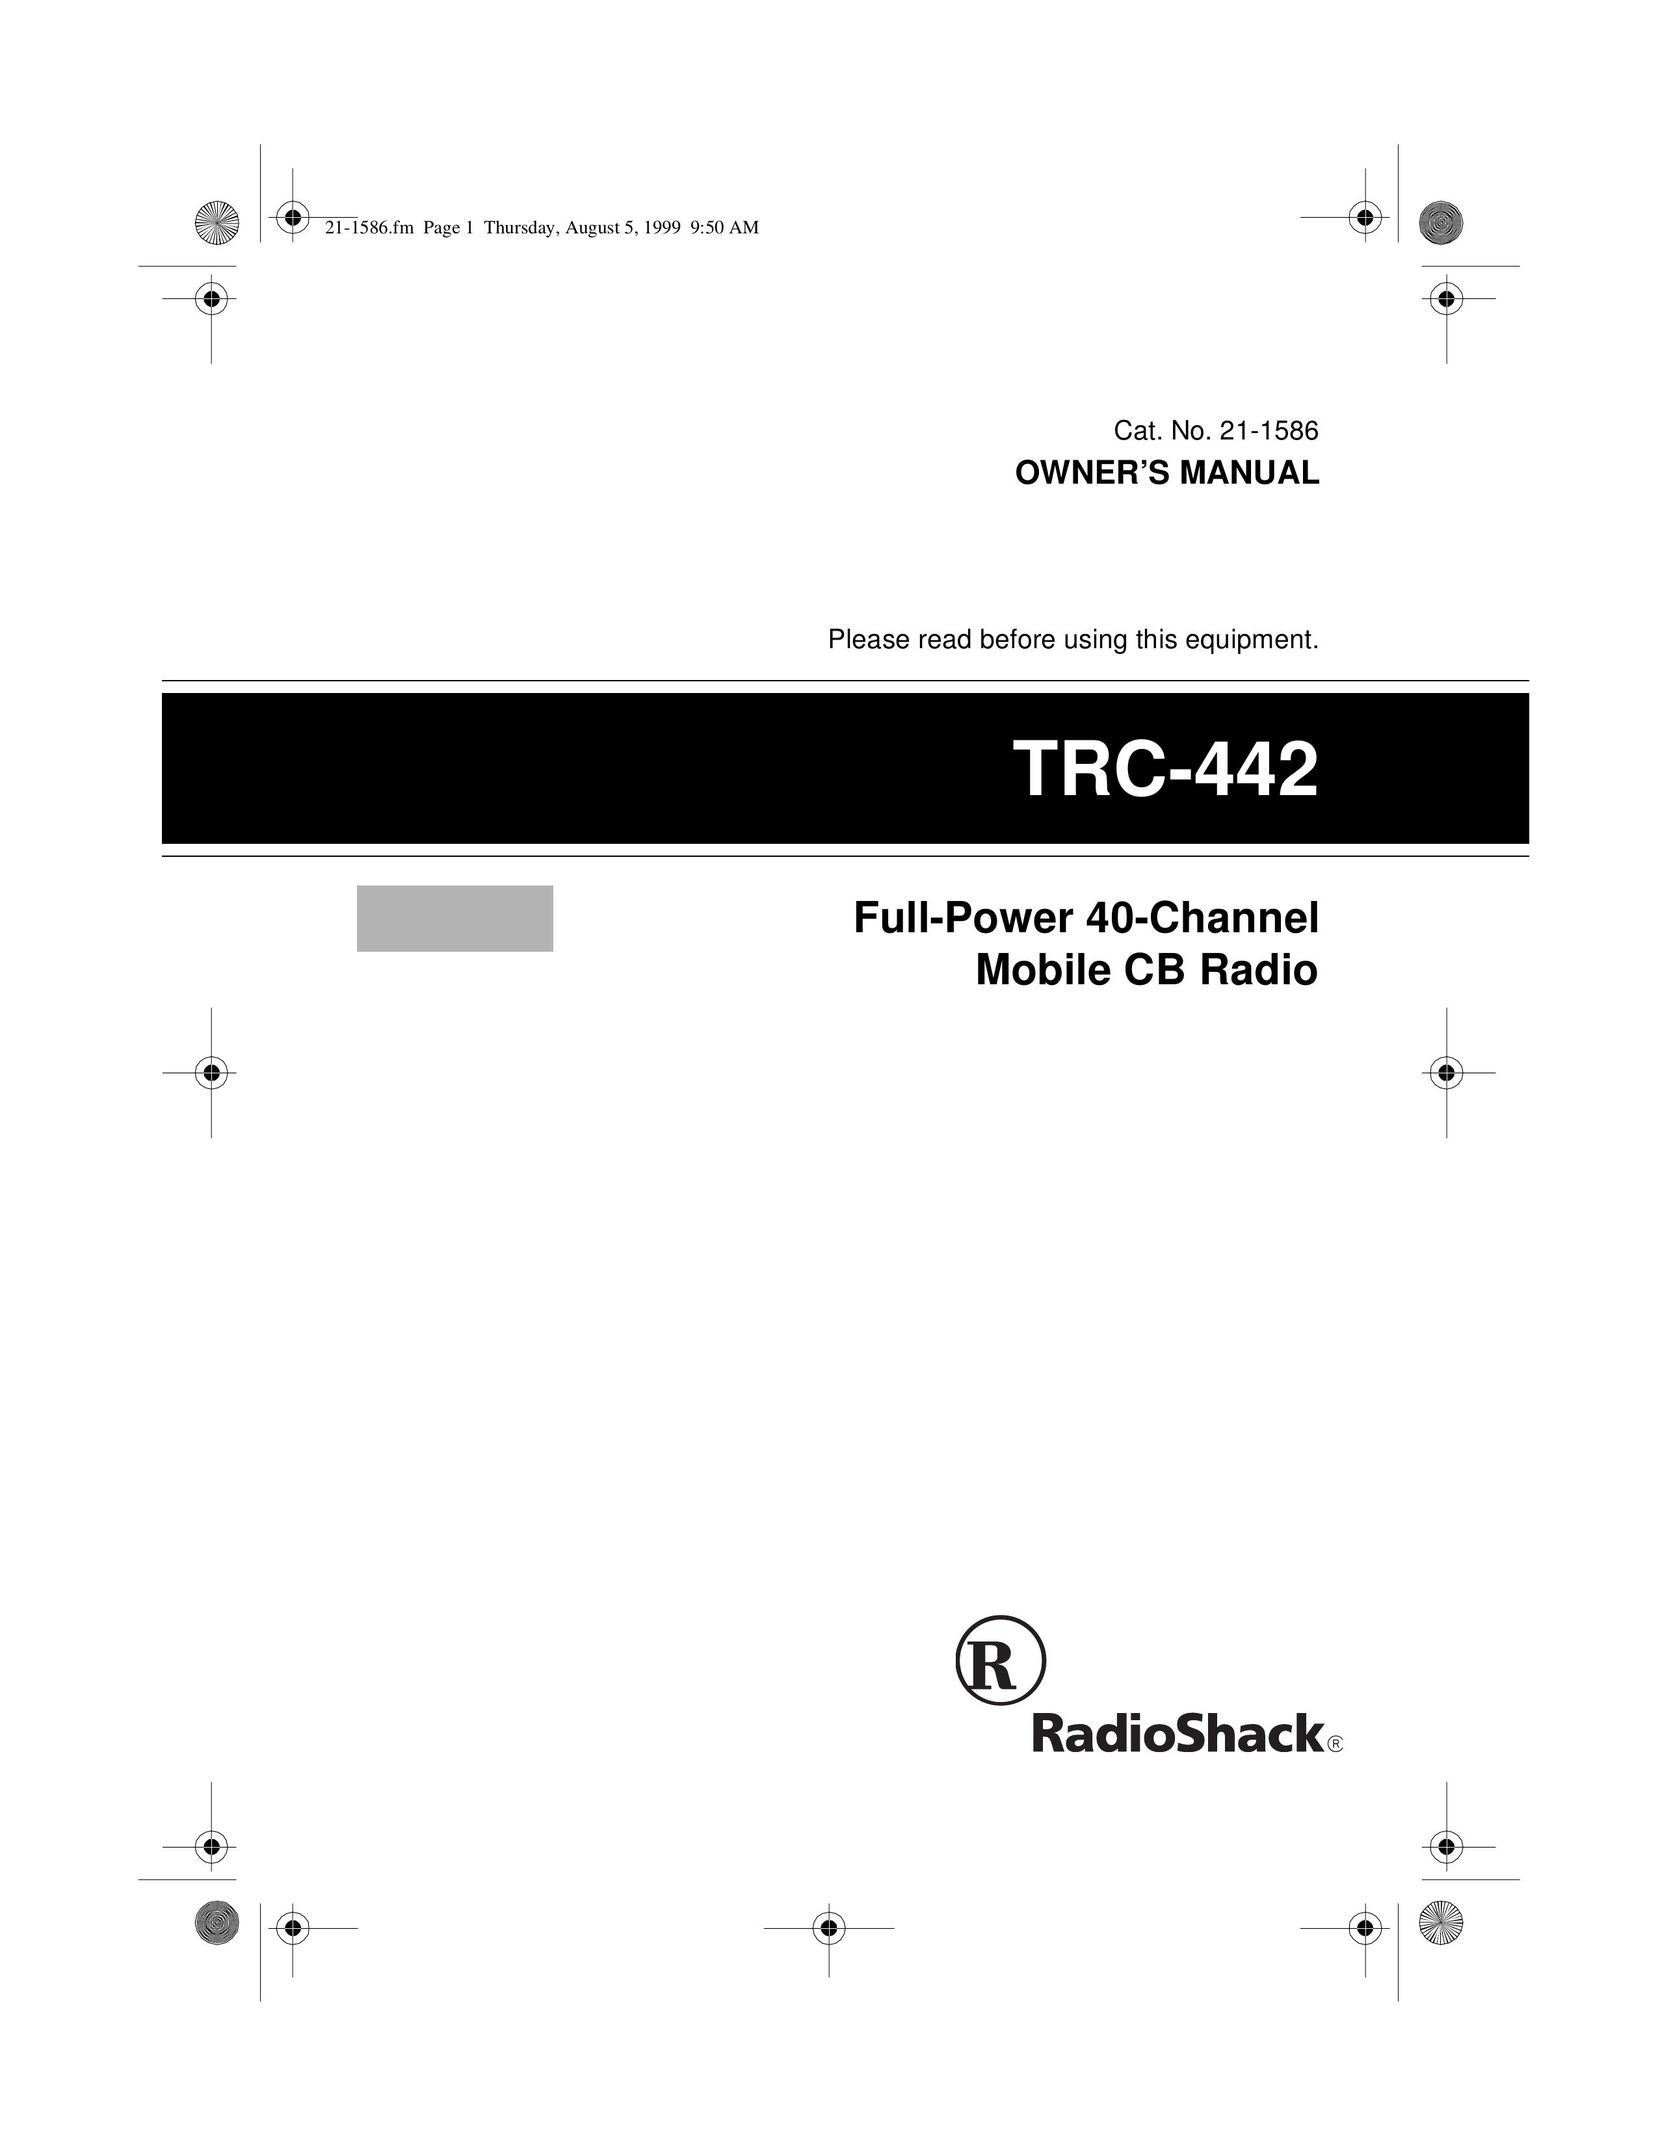 Radio Shack TRC-442 Radio User Manual